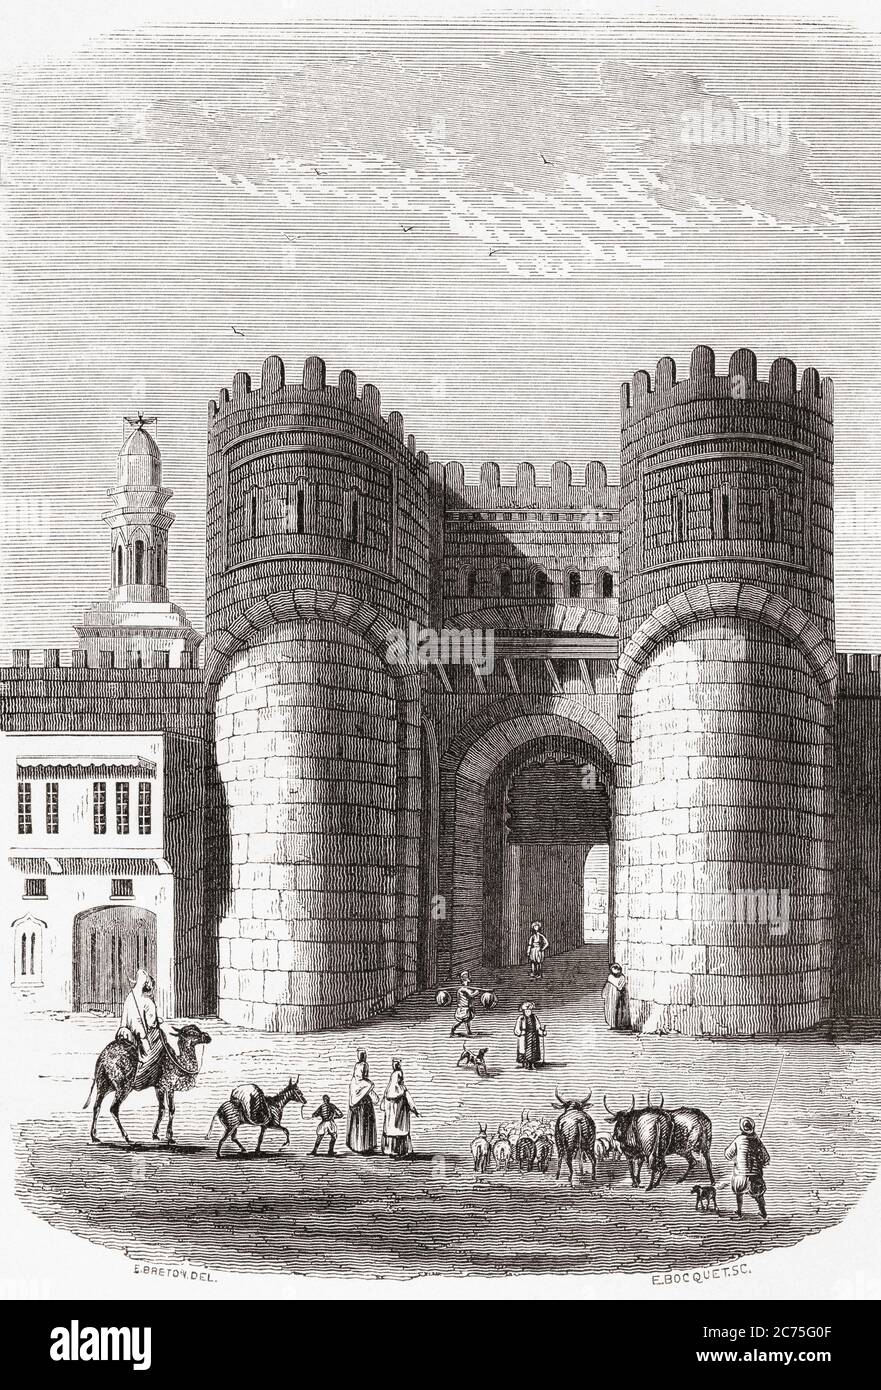 Le Bab al Futuh (porte de conquête), vieille ville du Caire, Égypte, vu ici au XIXe siècle. De monuments de tous les Peuples, publié en 1843. Banque D'Images